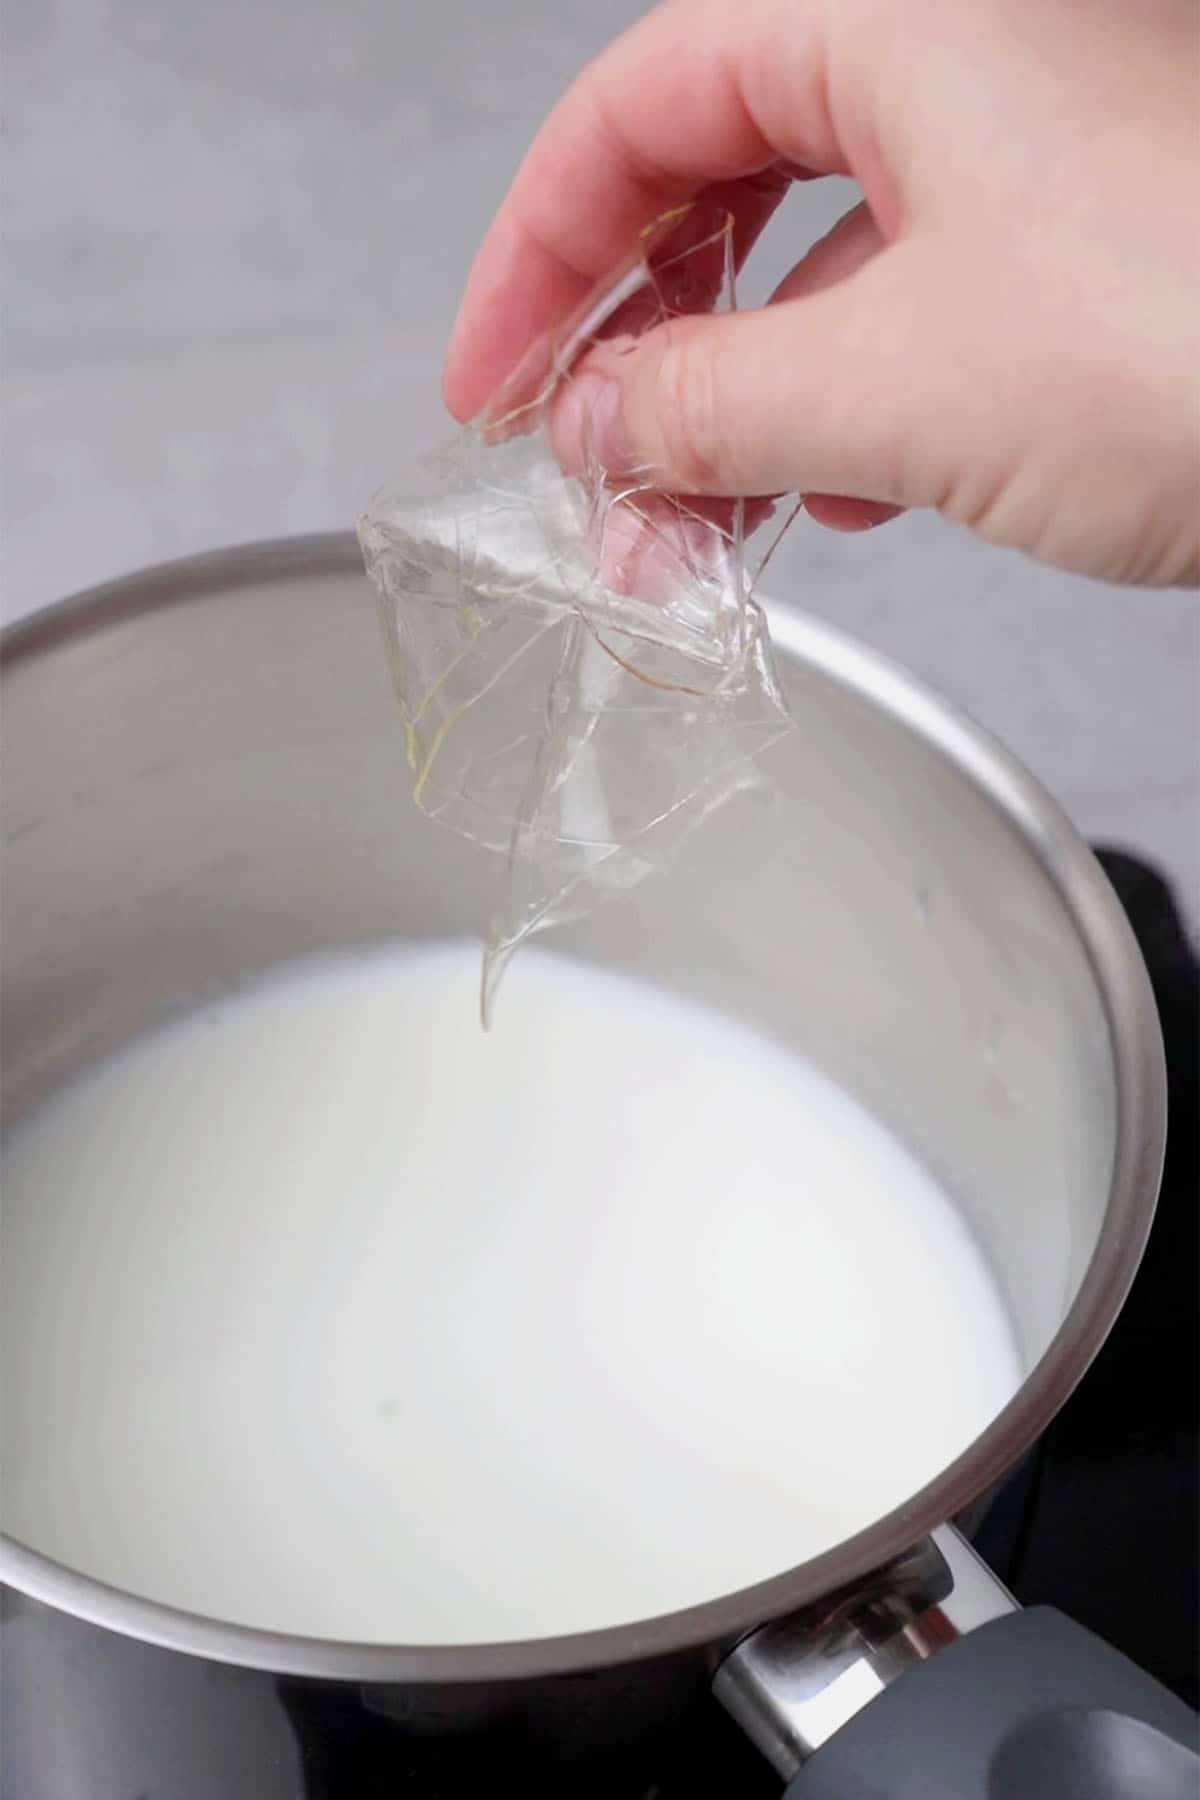 Soak gelatin sheets in milk.